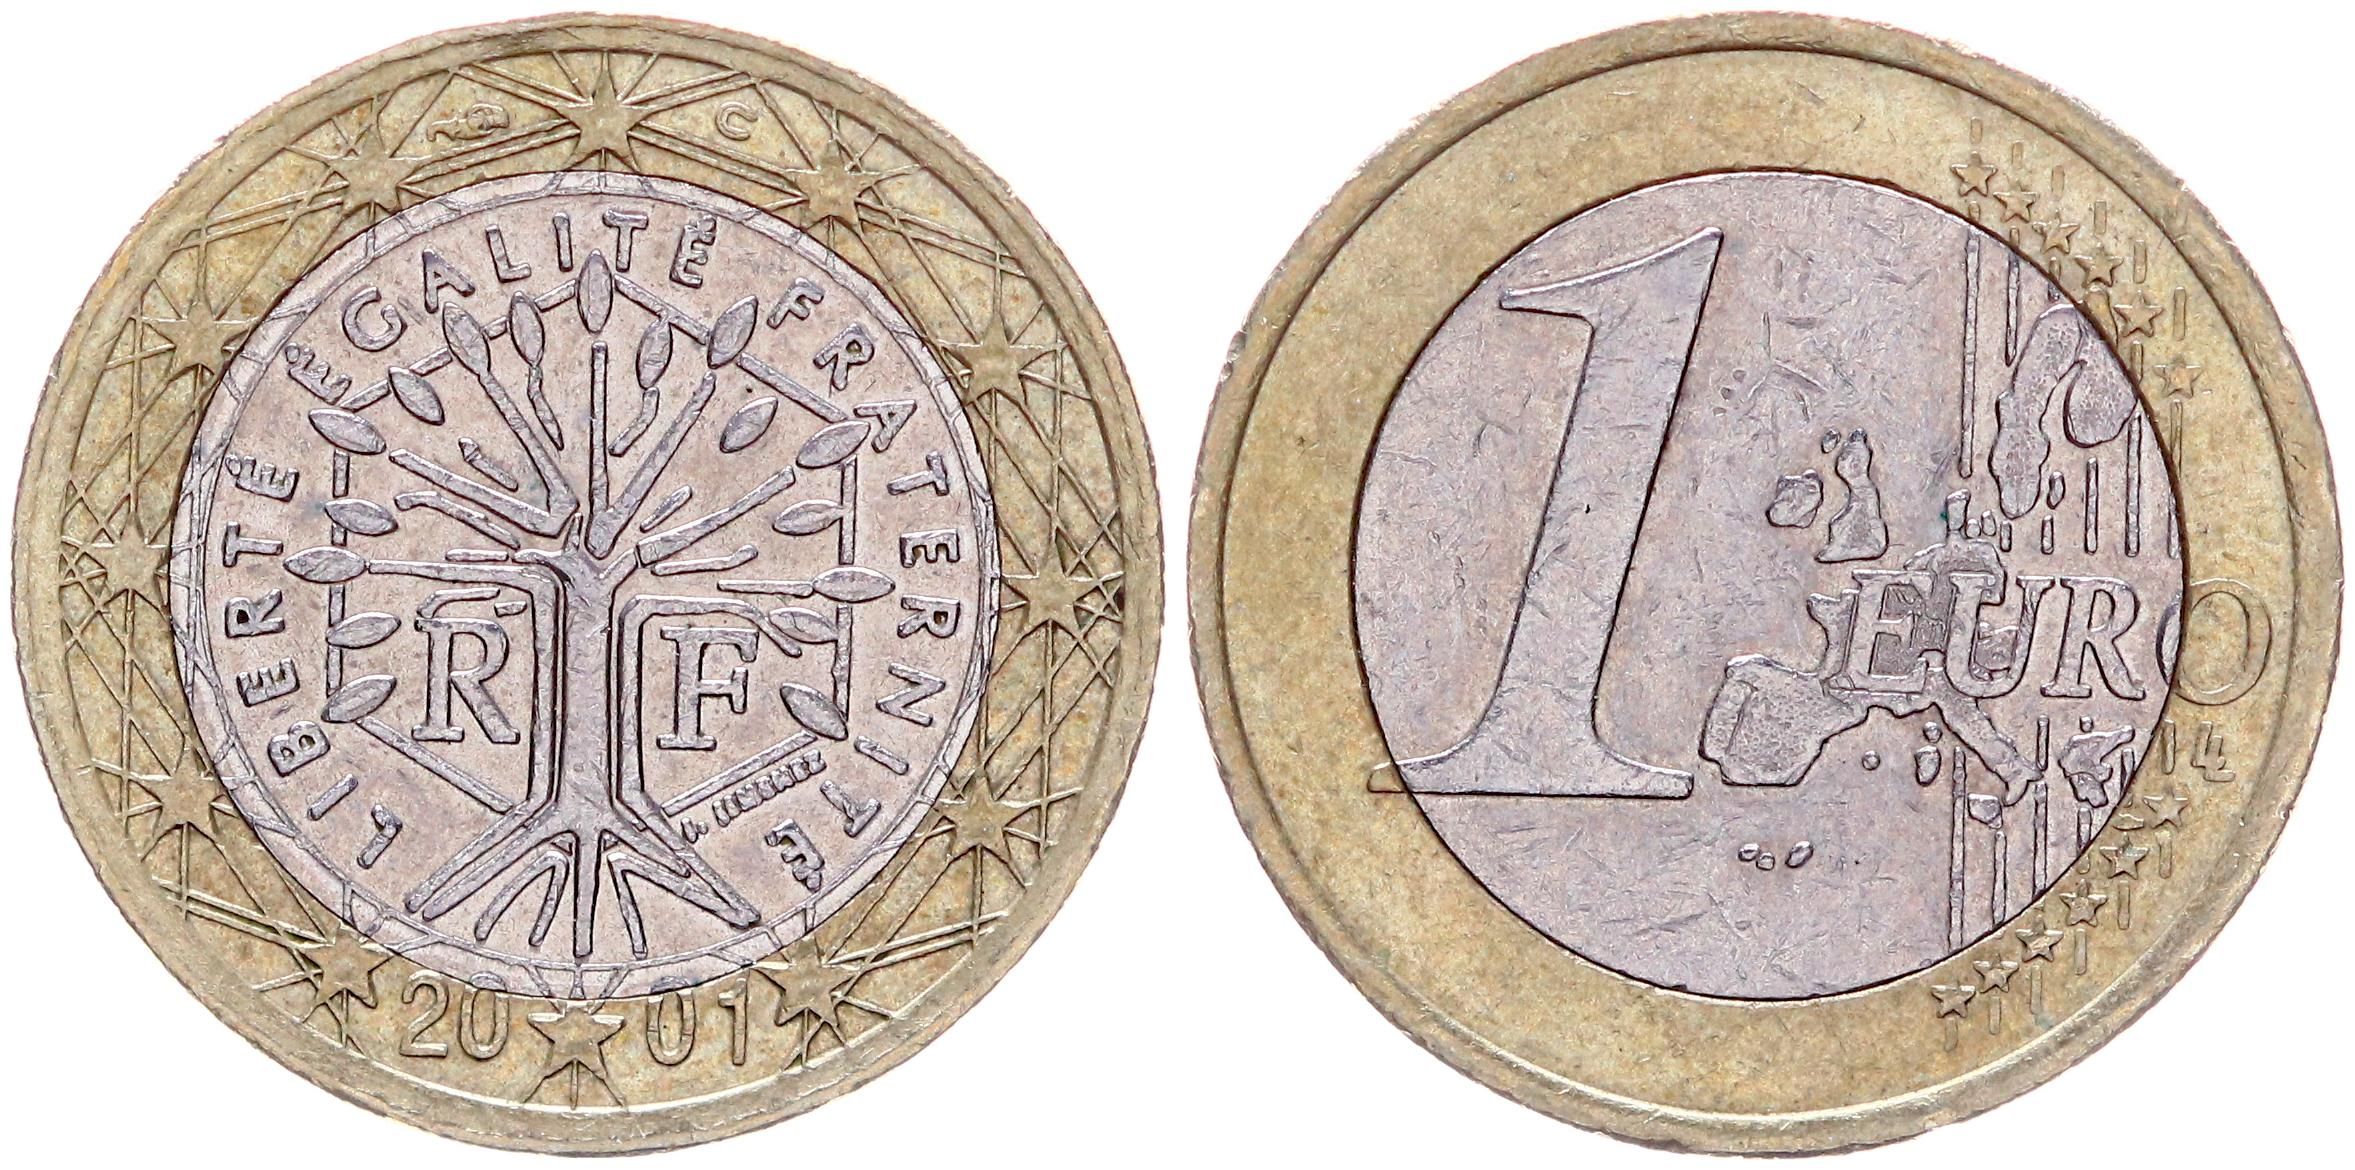 Евро 2001 год. Иностранная монета 1 евро 2001. Многоликая Франция Артамонов. Фото евро 2001 года выпуска фото.